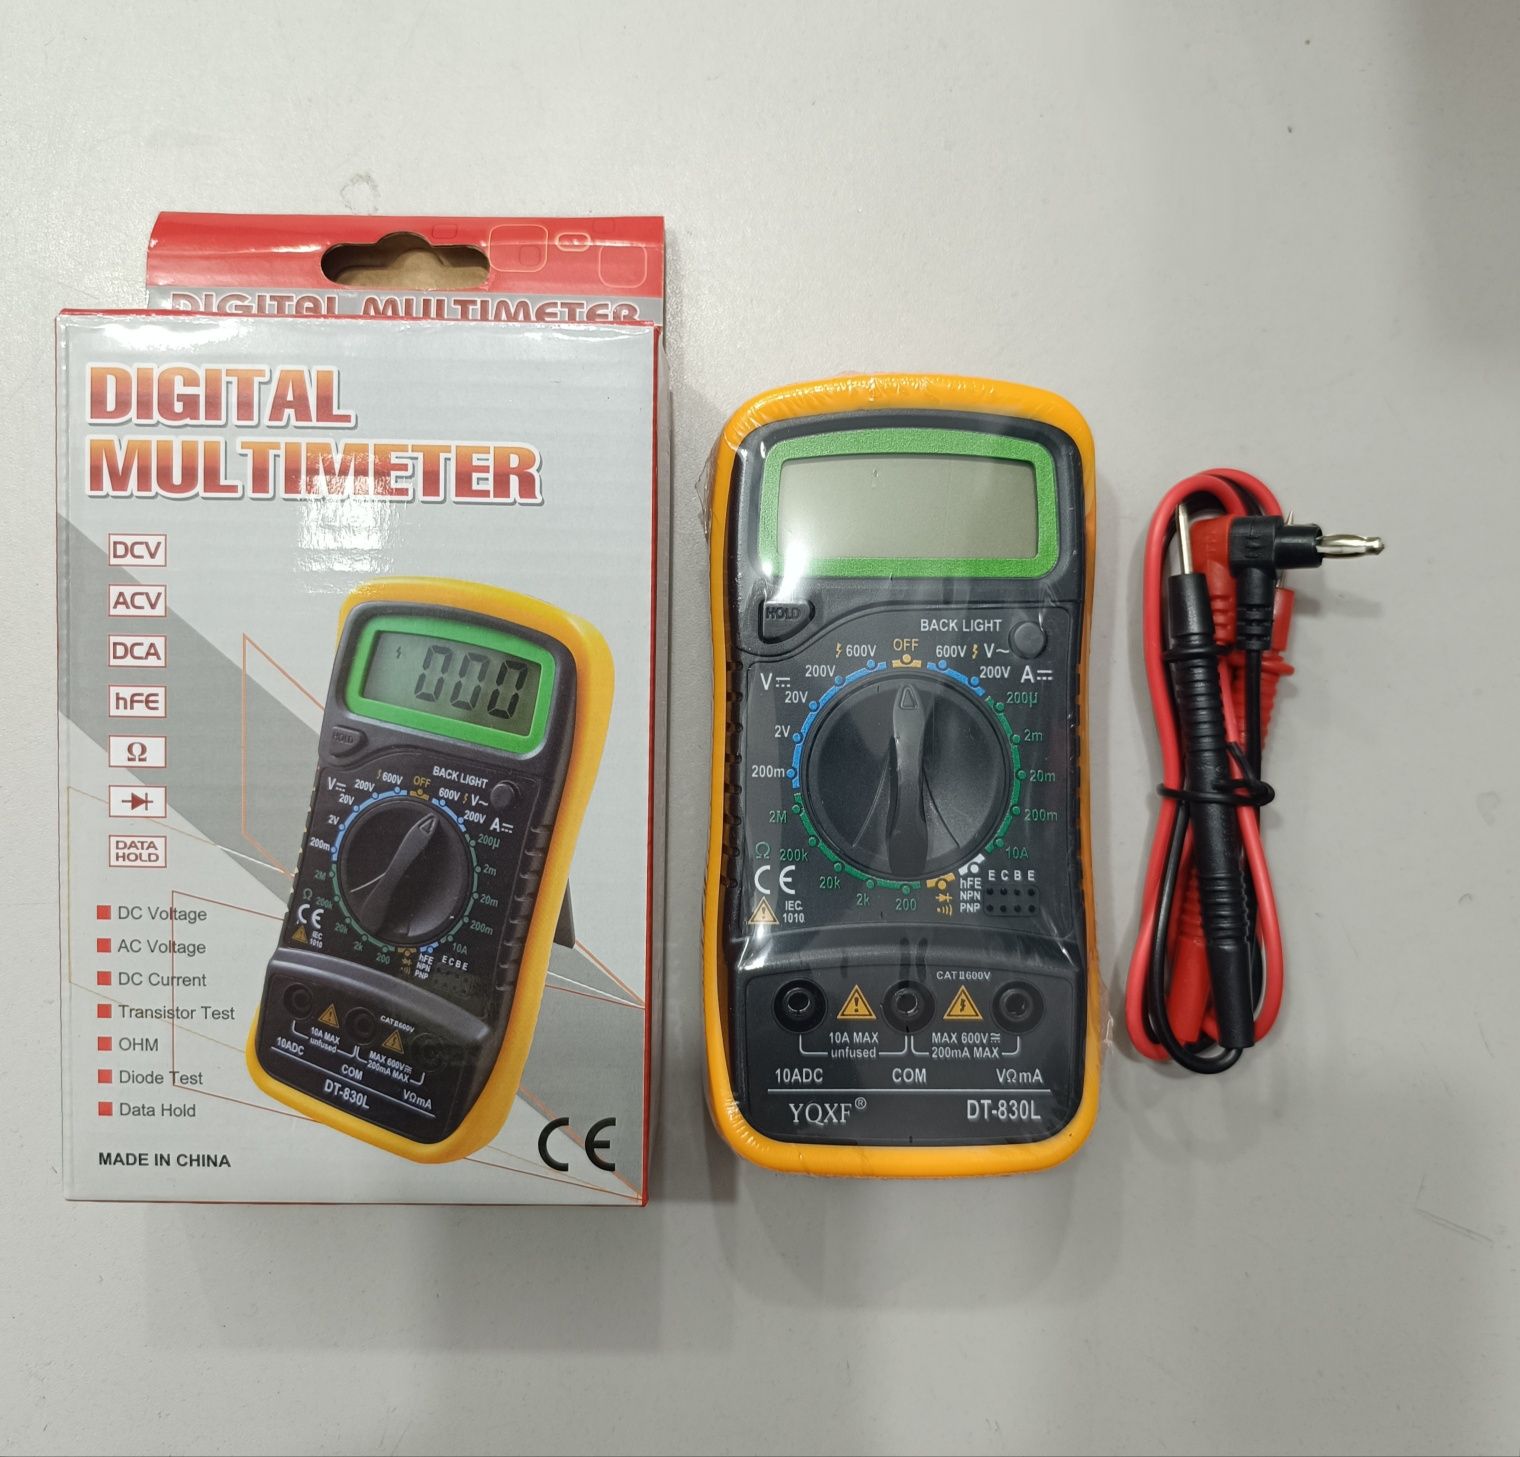 Цифровой мультиметр тестер Digital Multimeter DT-830L testr